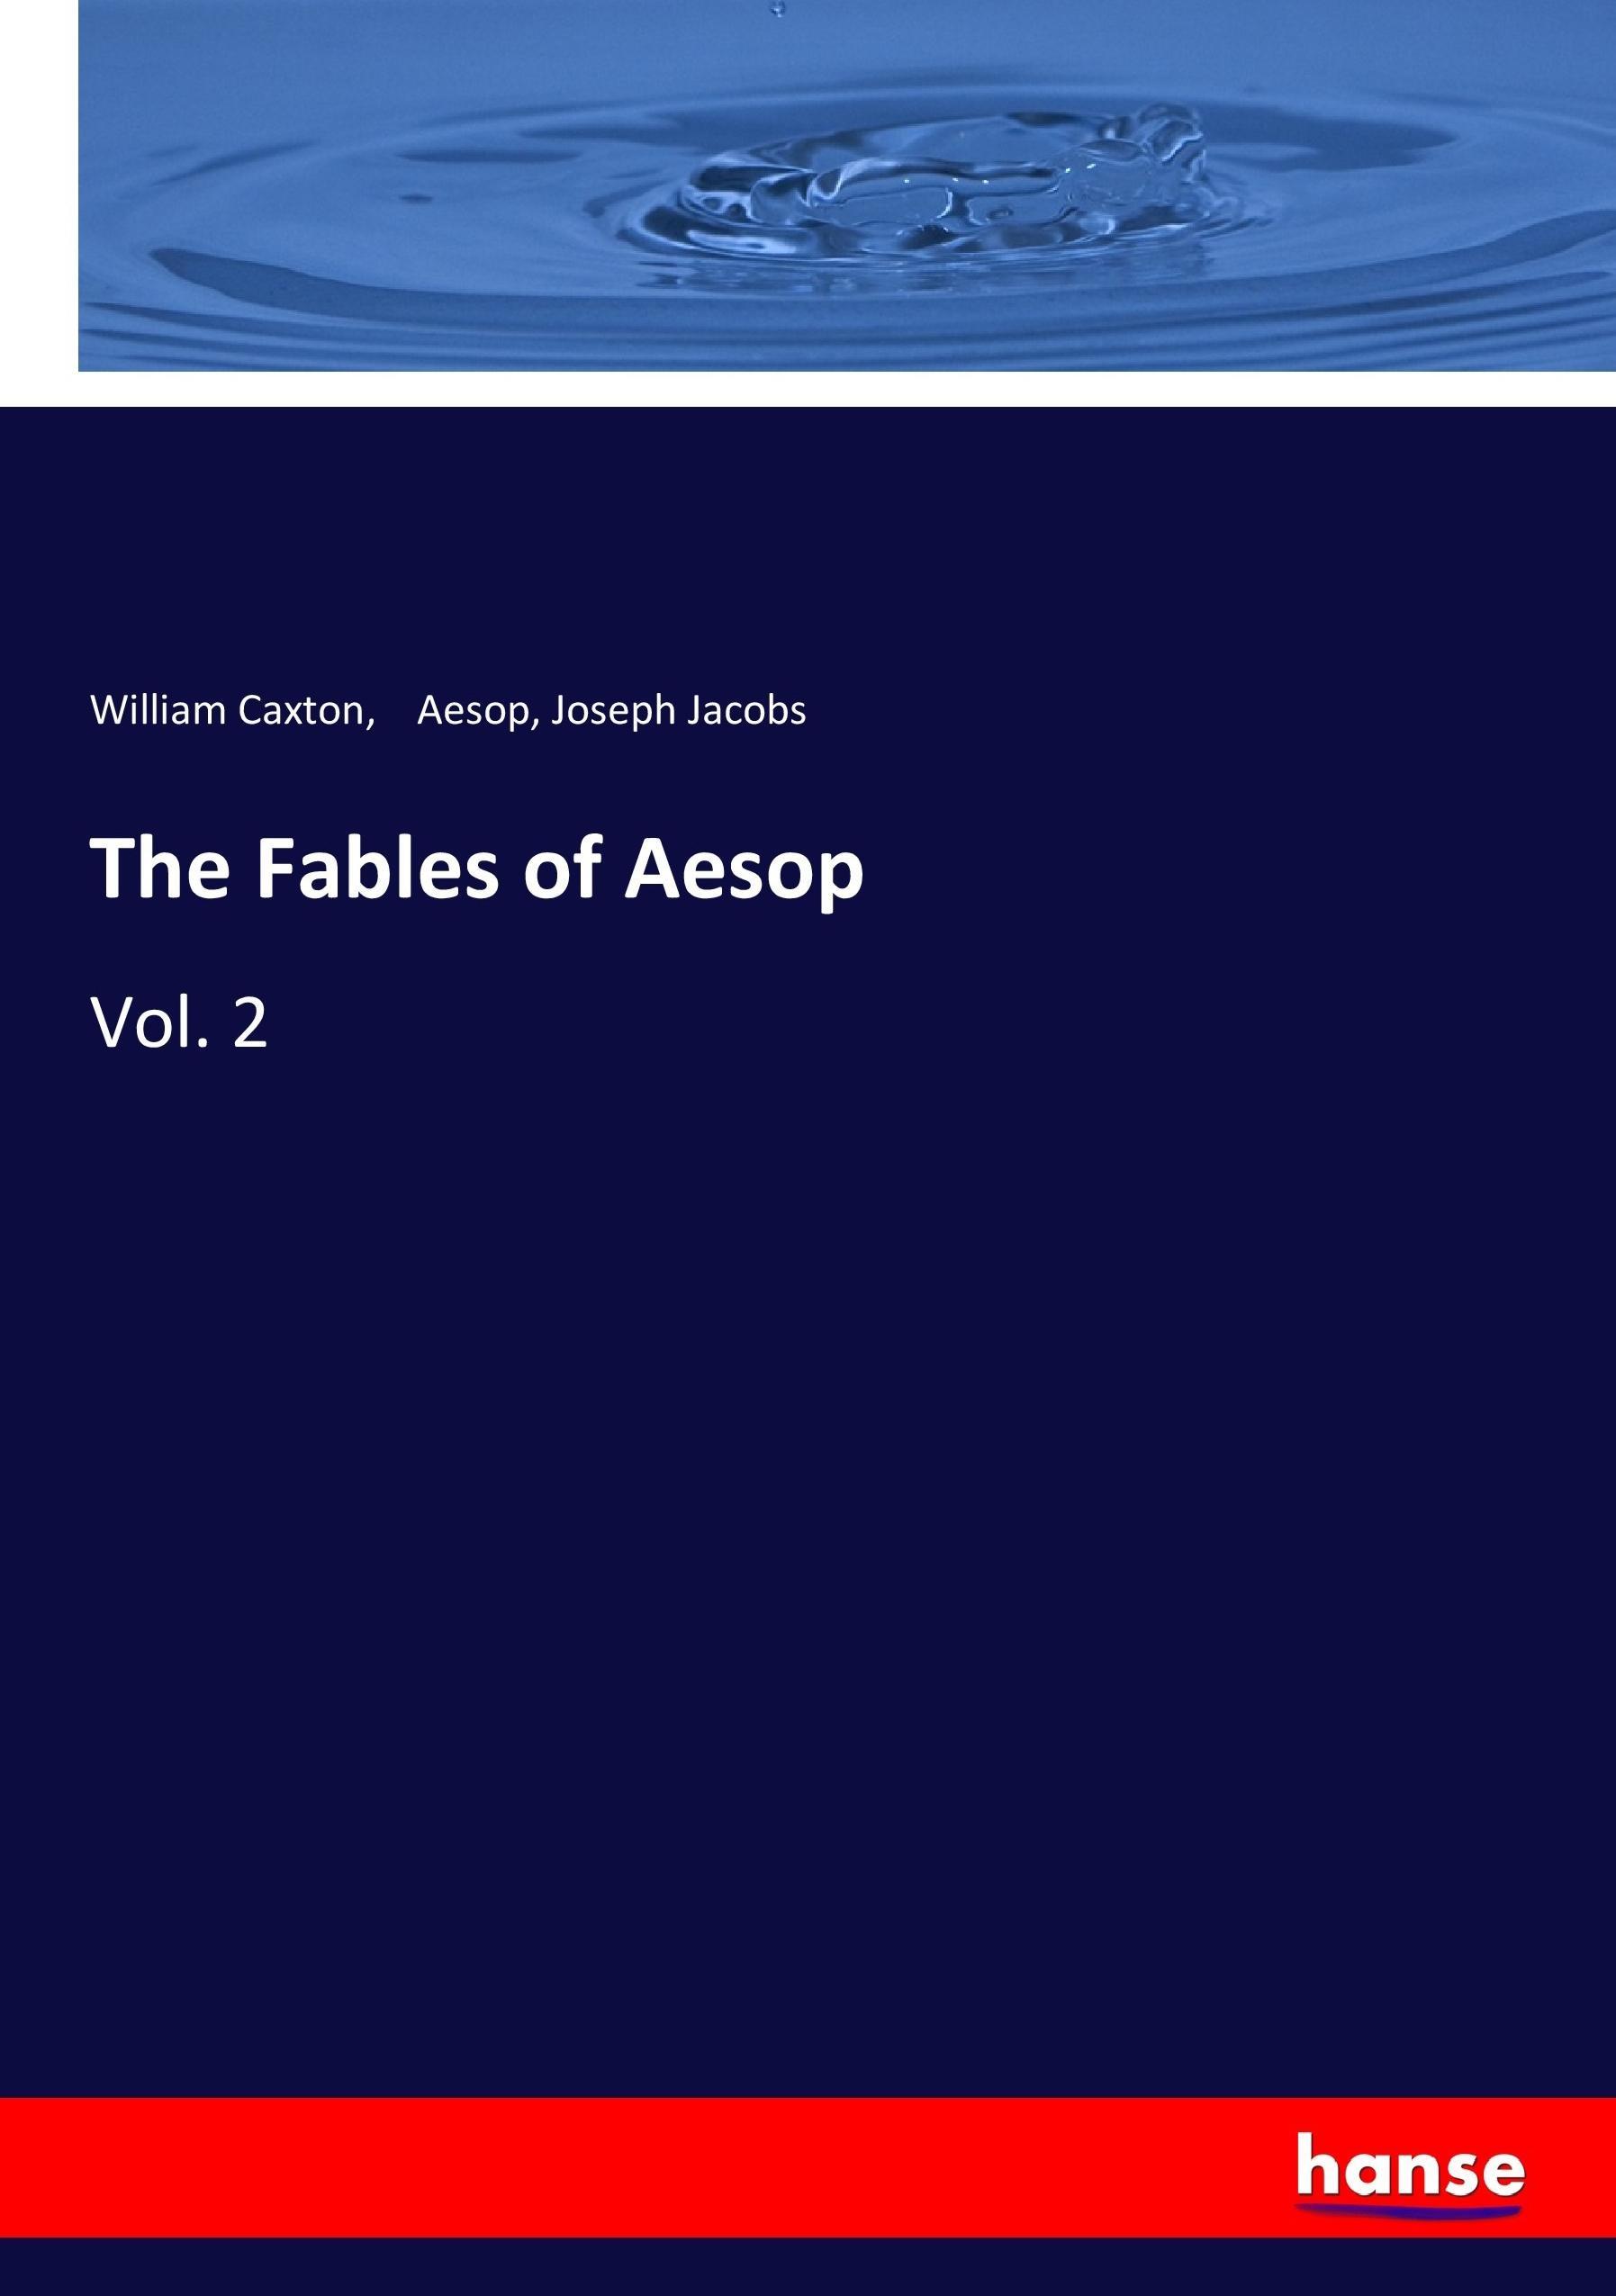 The Fables of Aesop | Vol. 2 | William Caxton (u. a.) | Taschenbuch | Paperback | 336 S. | Englisch | 2017 | hansebooks | EAN 9783744776752 - Caxton, William